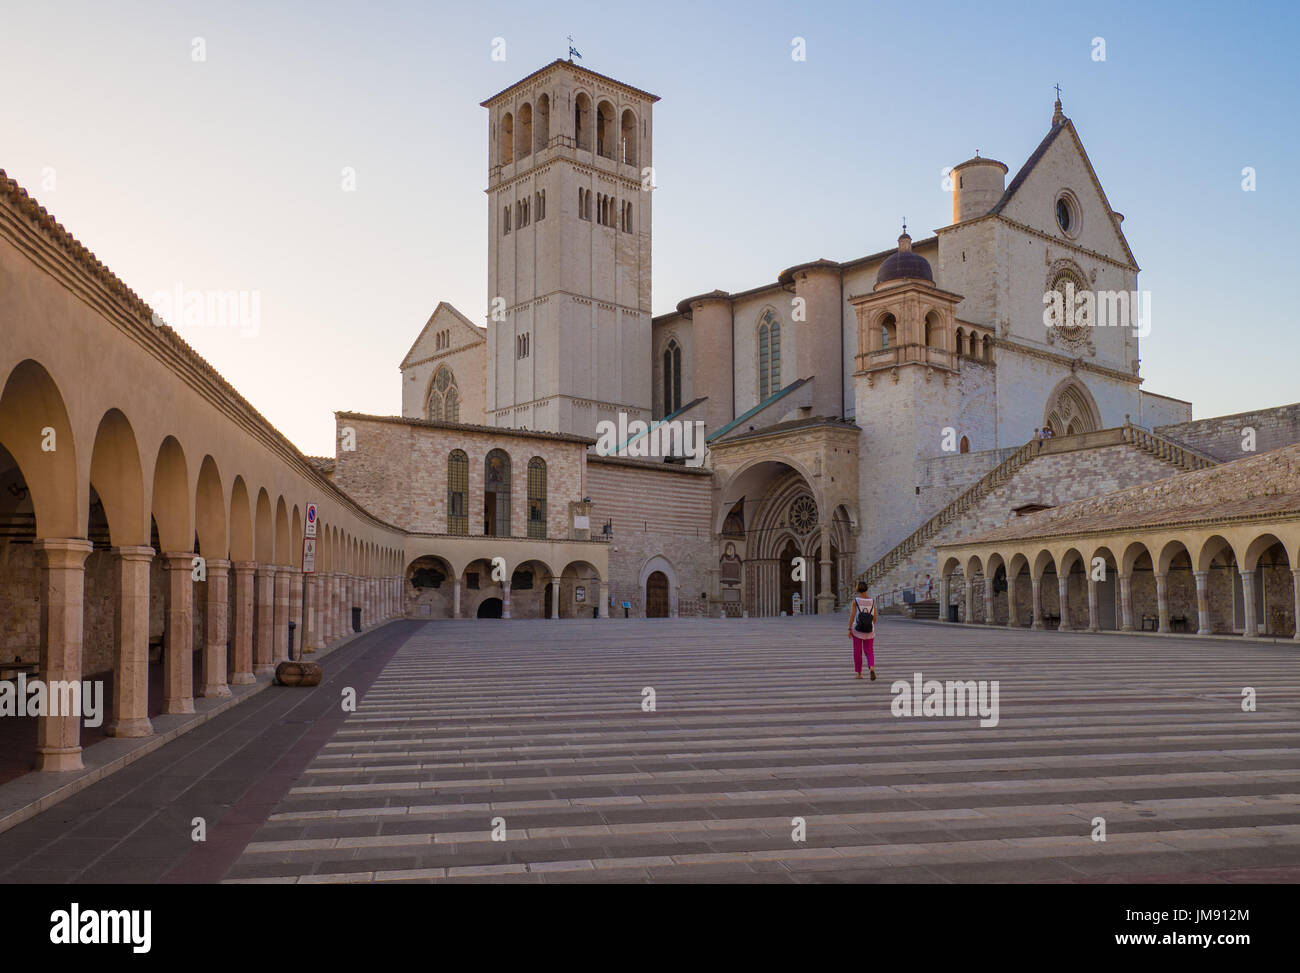 Assisi, Umbrien (Italien) - genial mittelalterlichen steinernen Stadt in Umbrien, mit Schloss und das berühmte Heiligtum des Heiligen Franziskus. Stockfoto